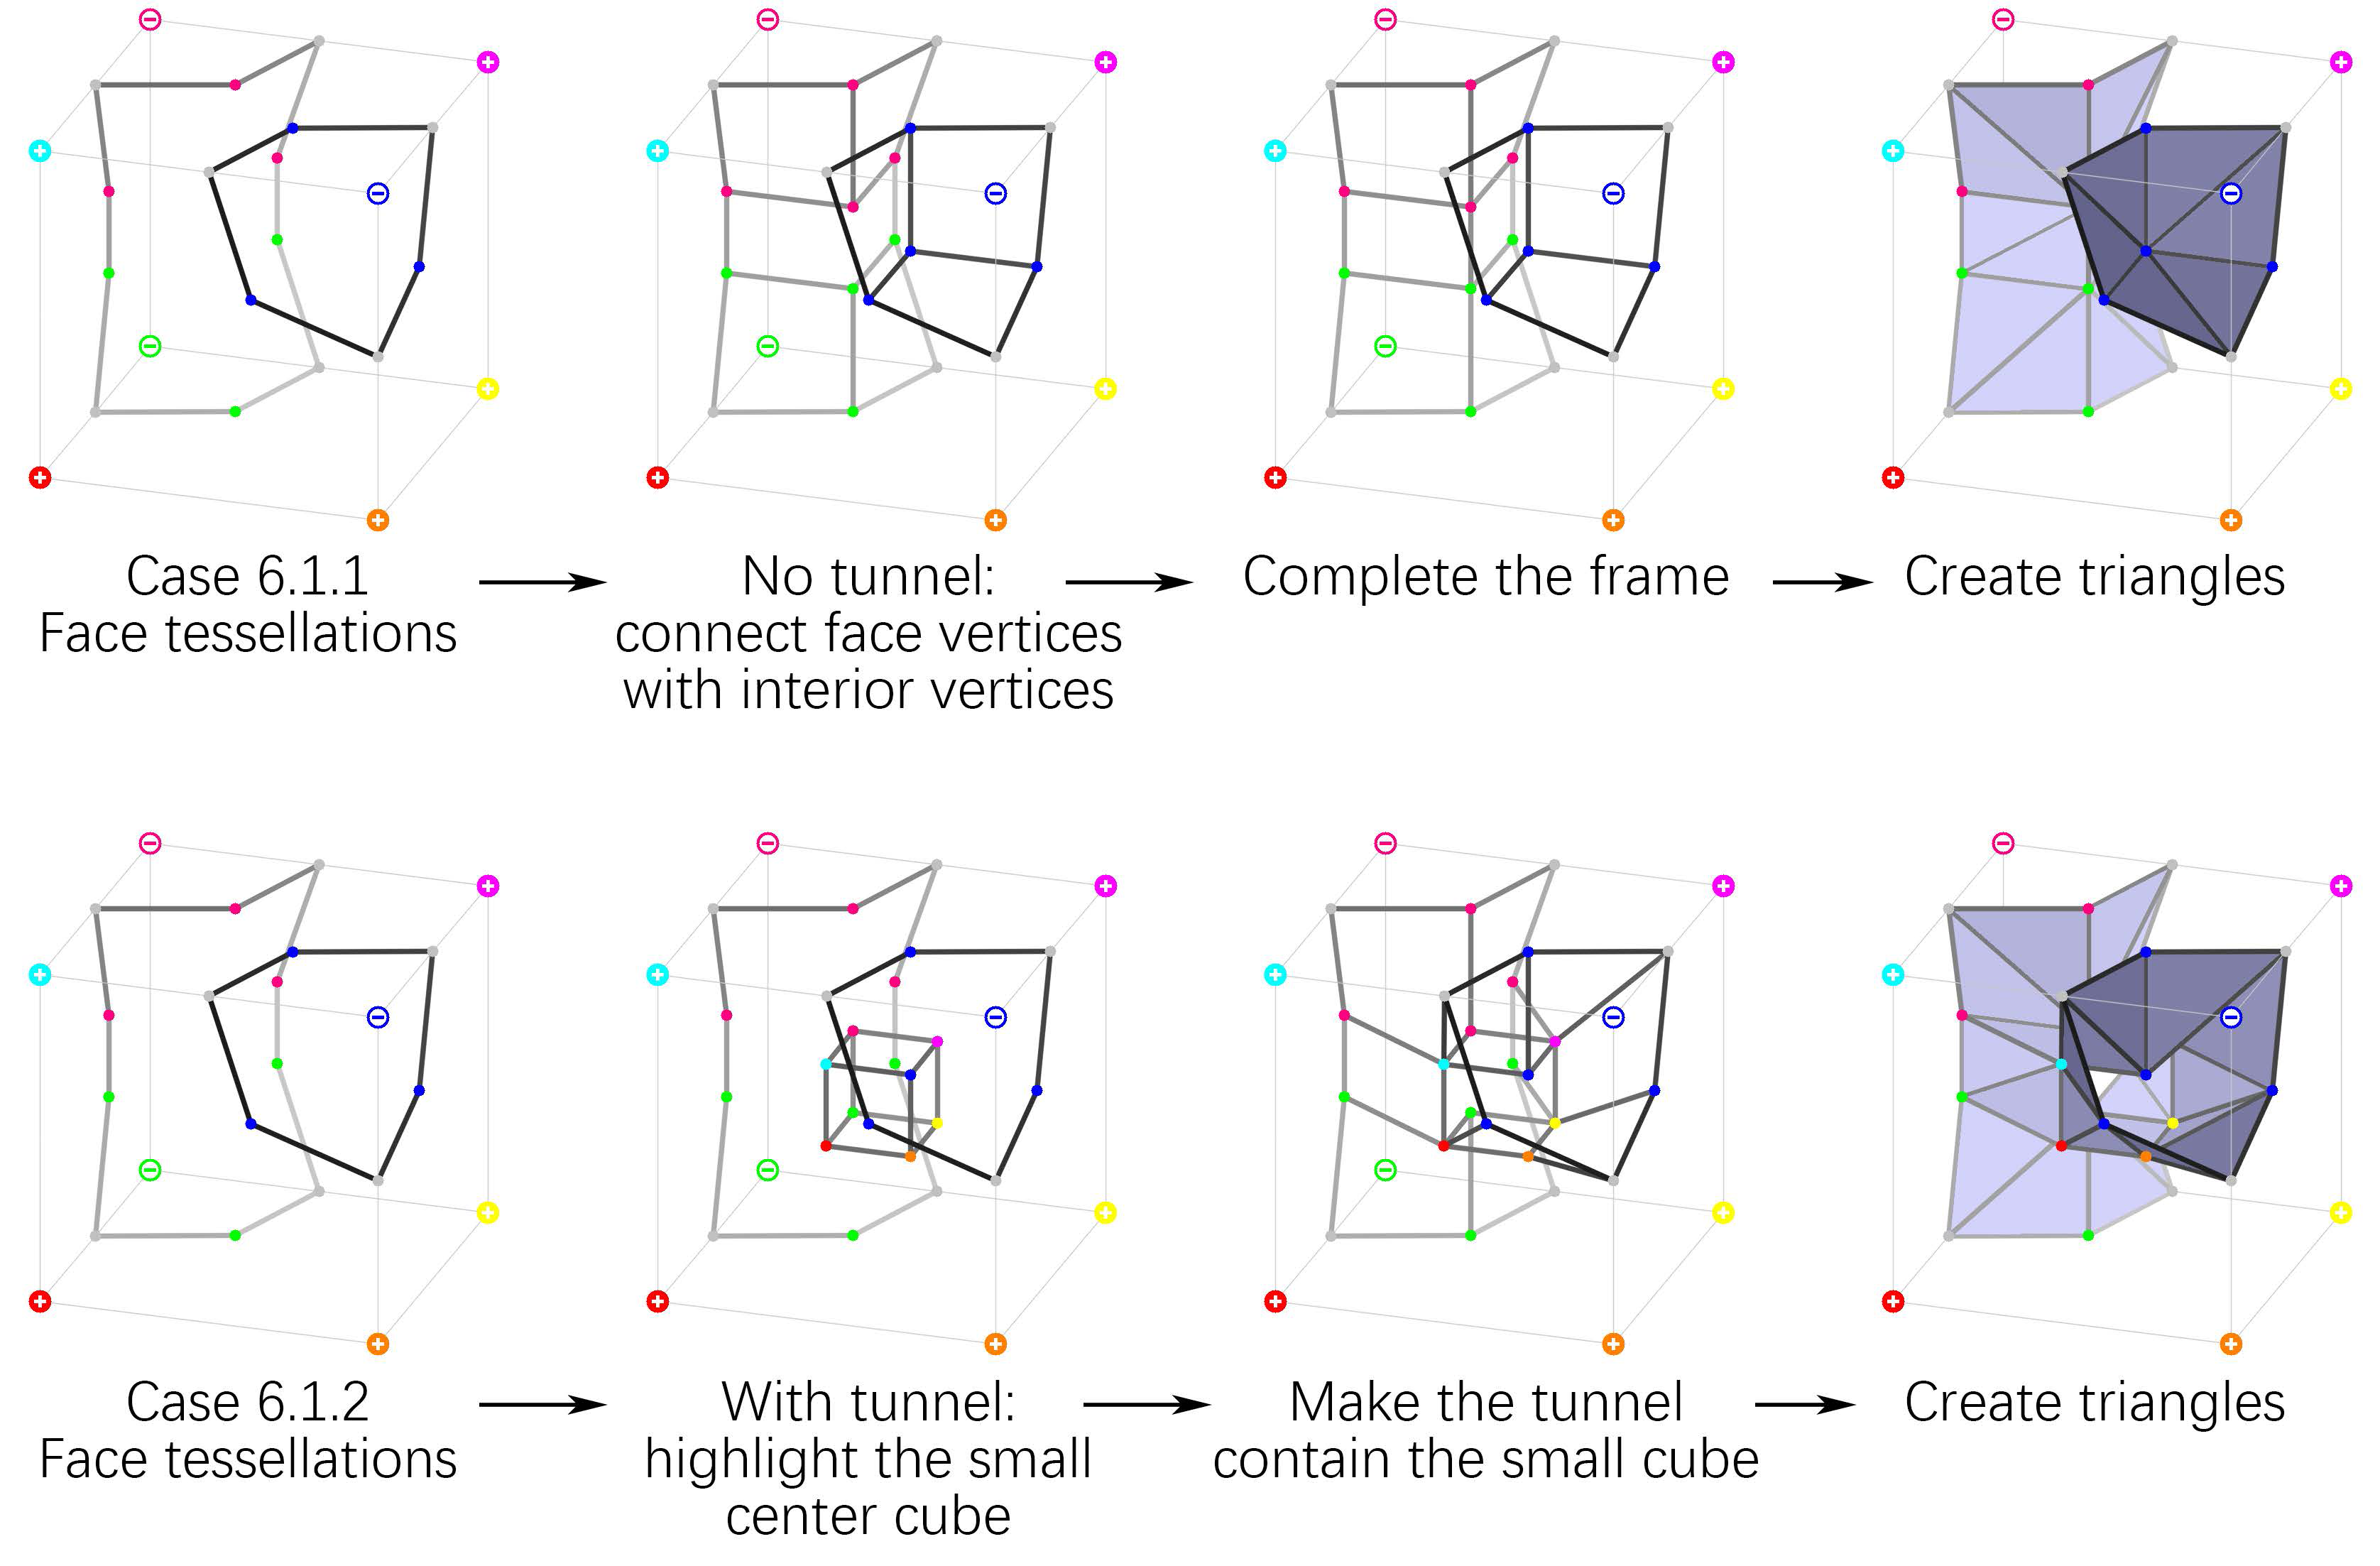 可能的‘隧道’改变了立方体内的拓扑结构